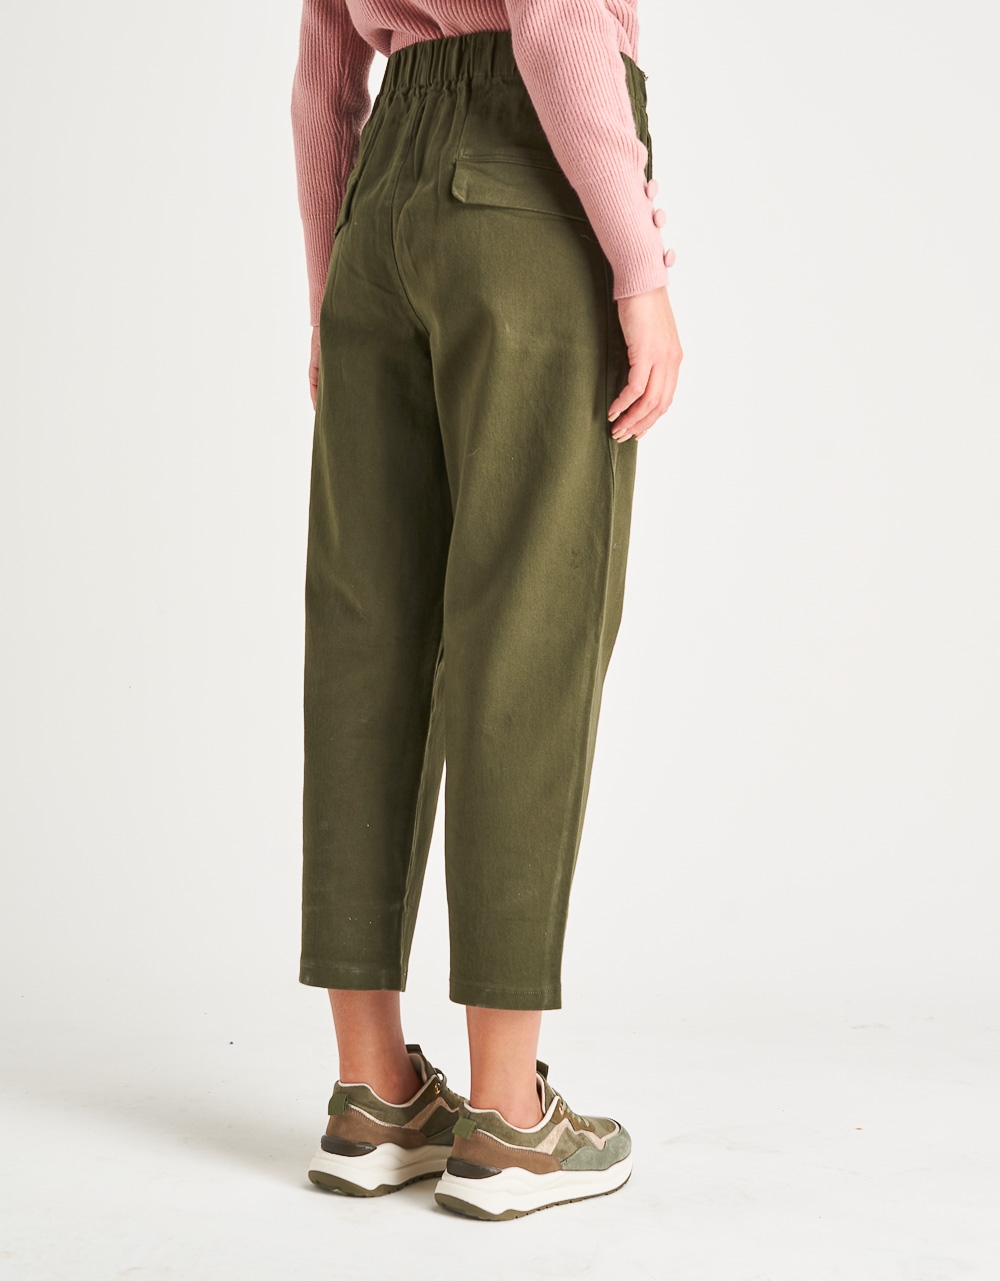 Εικόνα από Γυναικείο παντελόνι με λάστιχο στη μέση Χακί